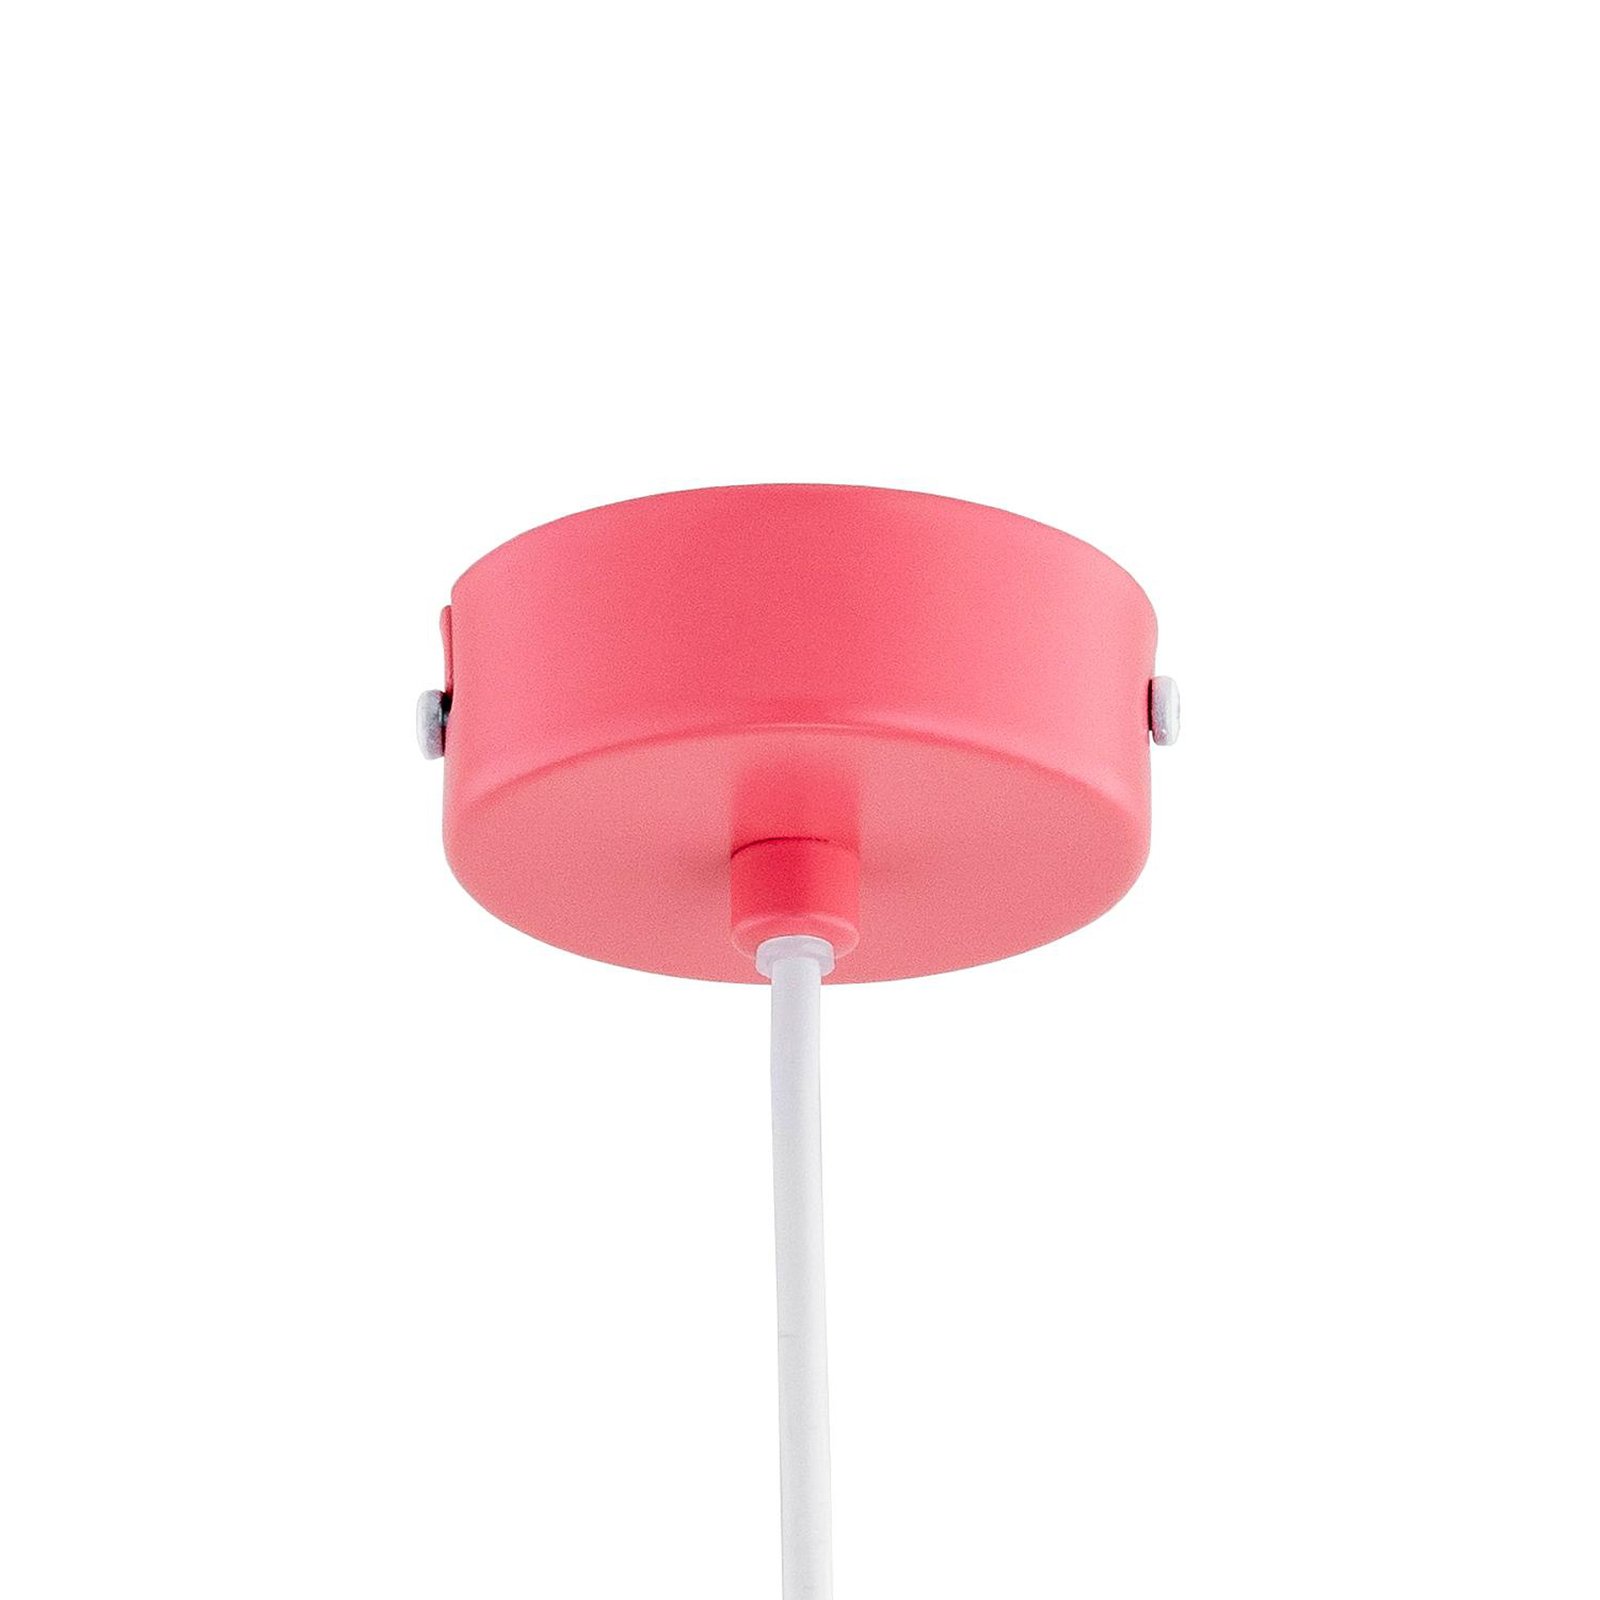 Solo Gem hanglamp, roze, Ø 23 cm, metaal